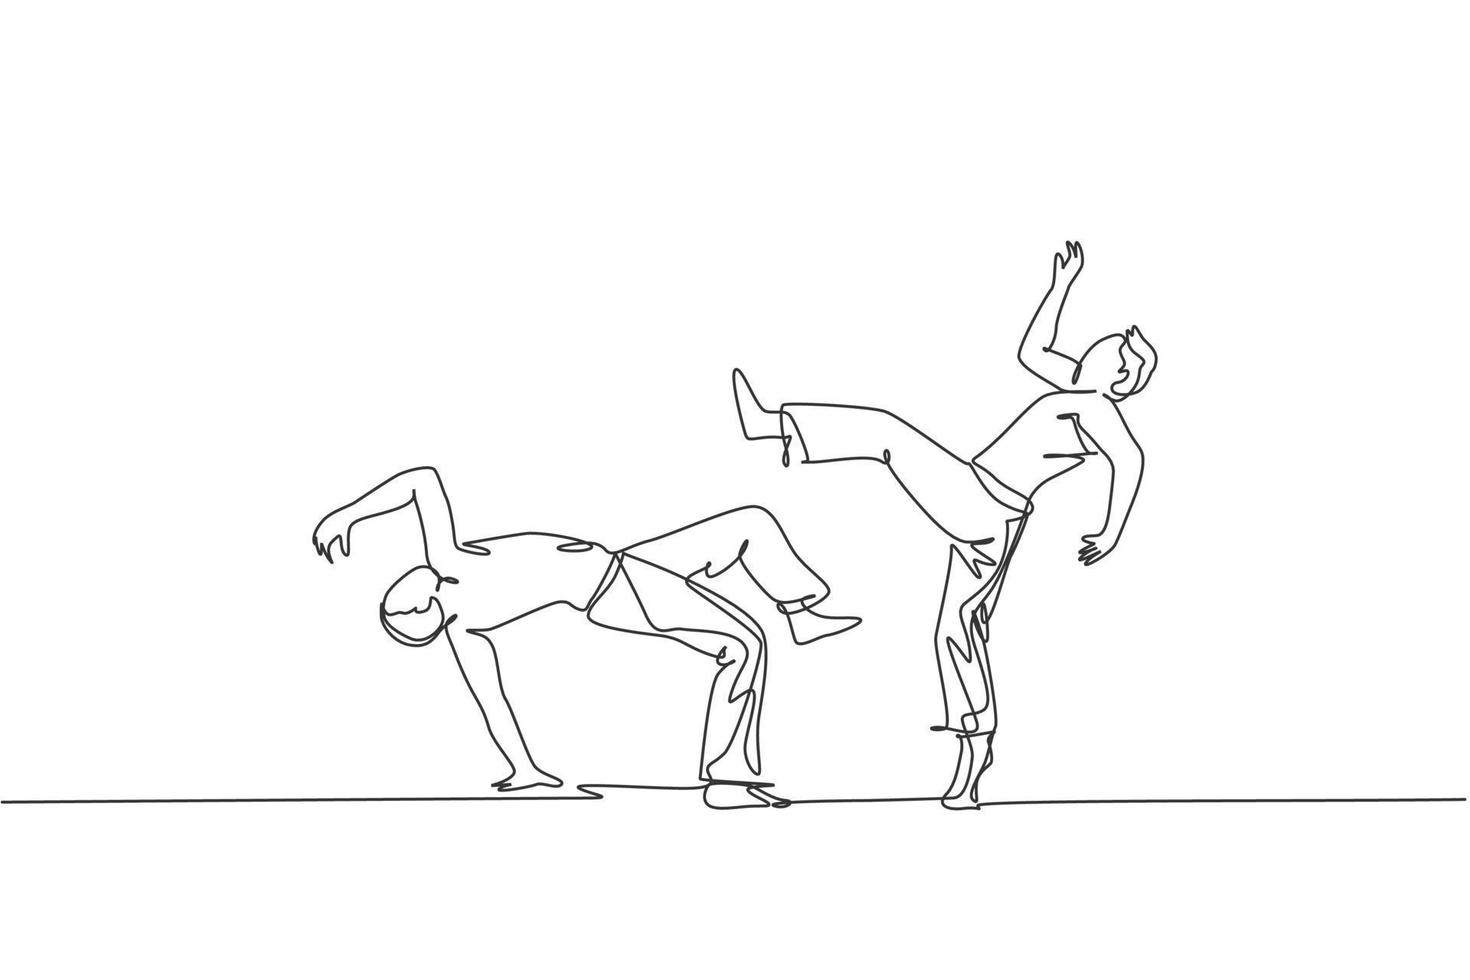 dibujo de una sola línea continua de dos jóvenes deportistas practican el movimiento de capoeira brasileño en la calle al aire libre. concepto de deporte de arte marcial de cultura. ilustración de vector de diseño de dibujo de una línea de moda